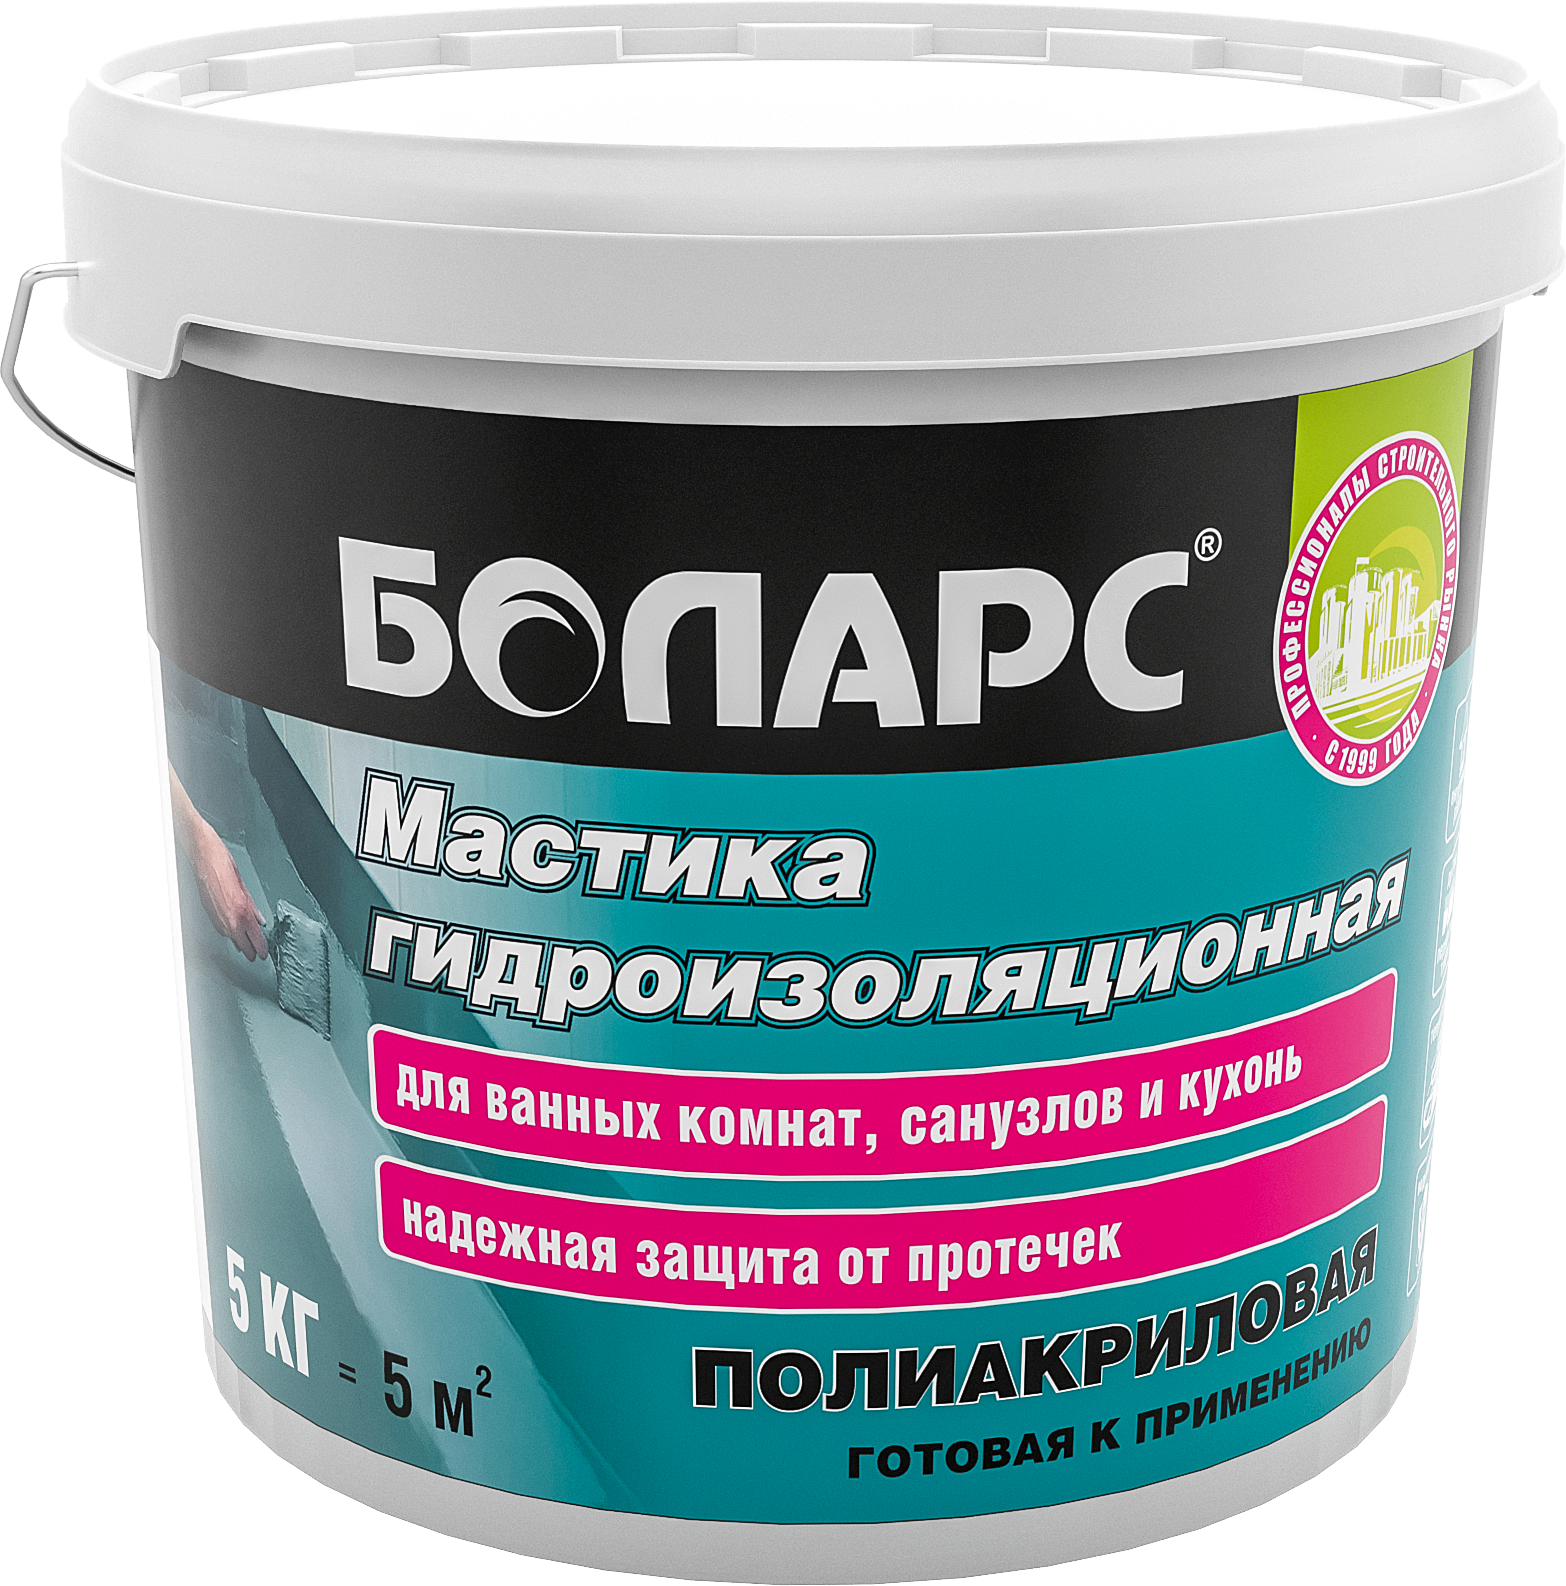 Мастика для гидроизоляции бетона - цены, купить в интернет-магазине ТЕХНОНИКОЛЬ в Москве